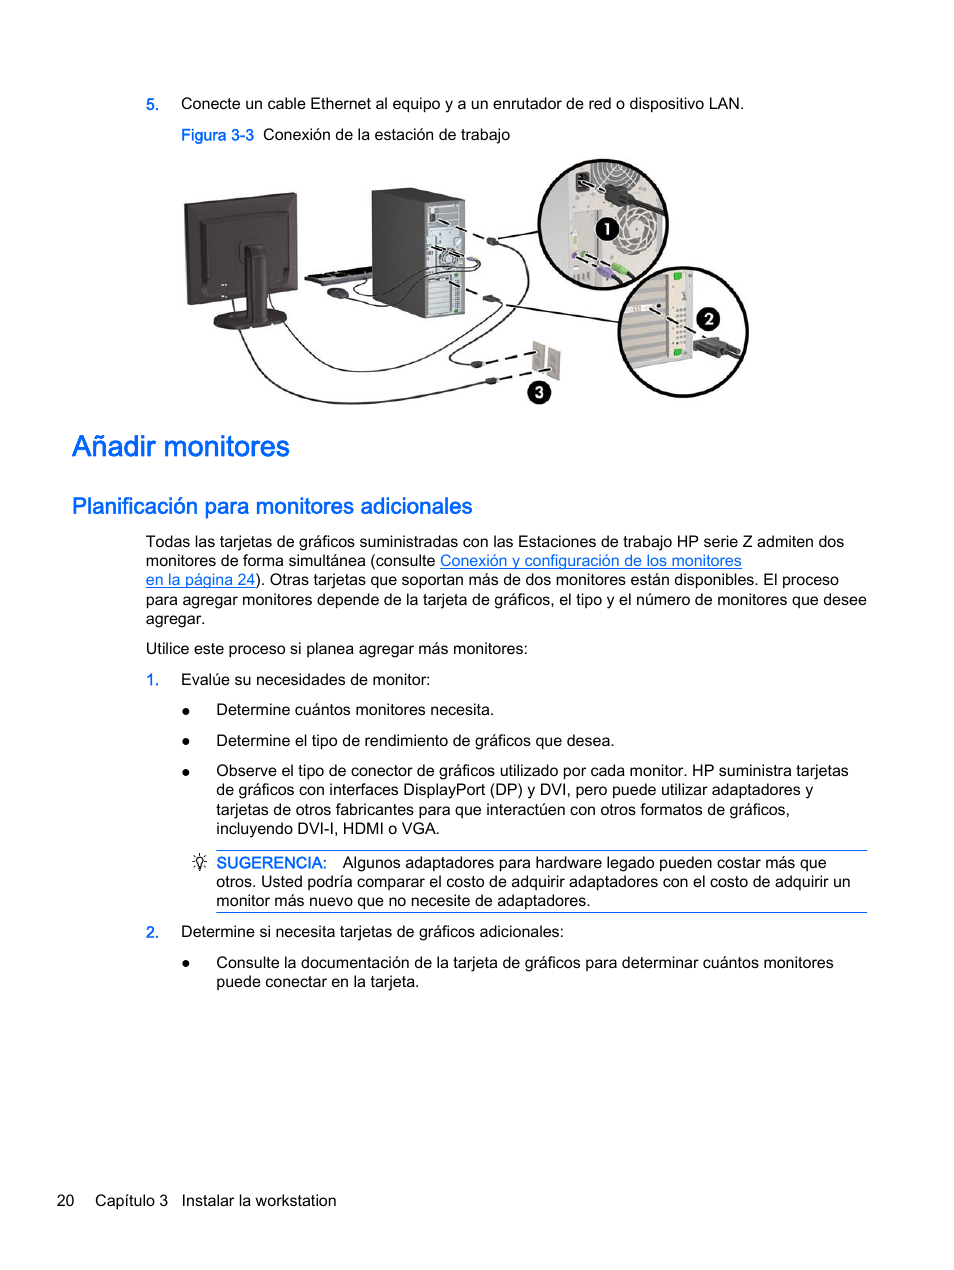 Añadir monitores, Planificación para monitores adicionales | HP Estación de trabajo HP Z820 Manual del usuario | Página 28 / 61